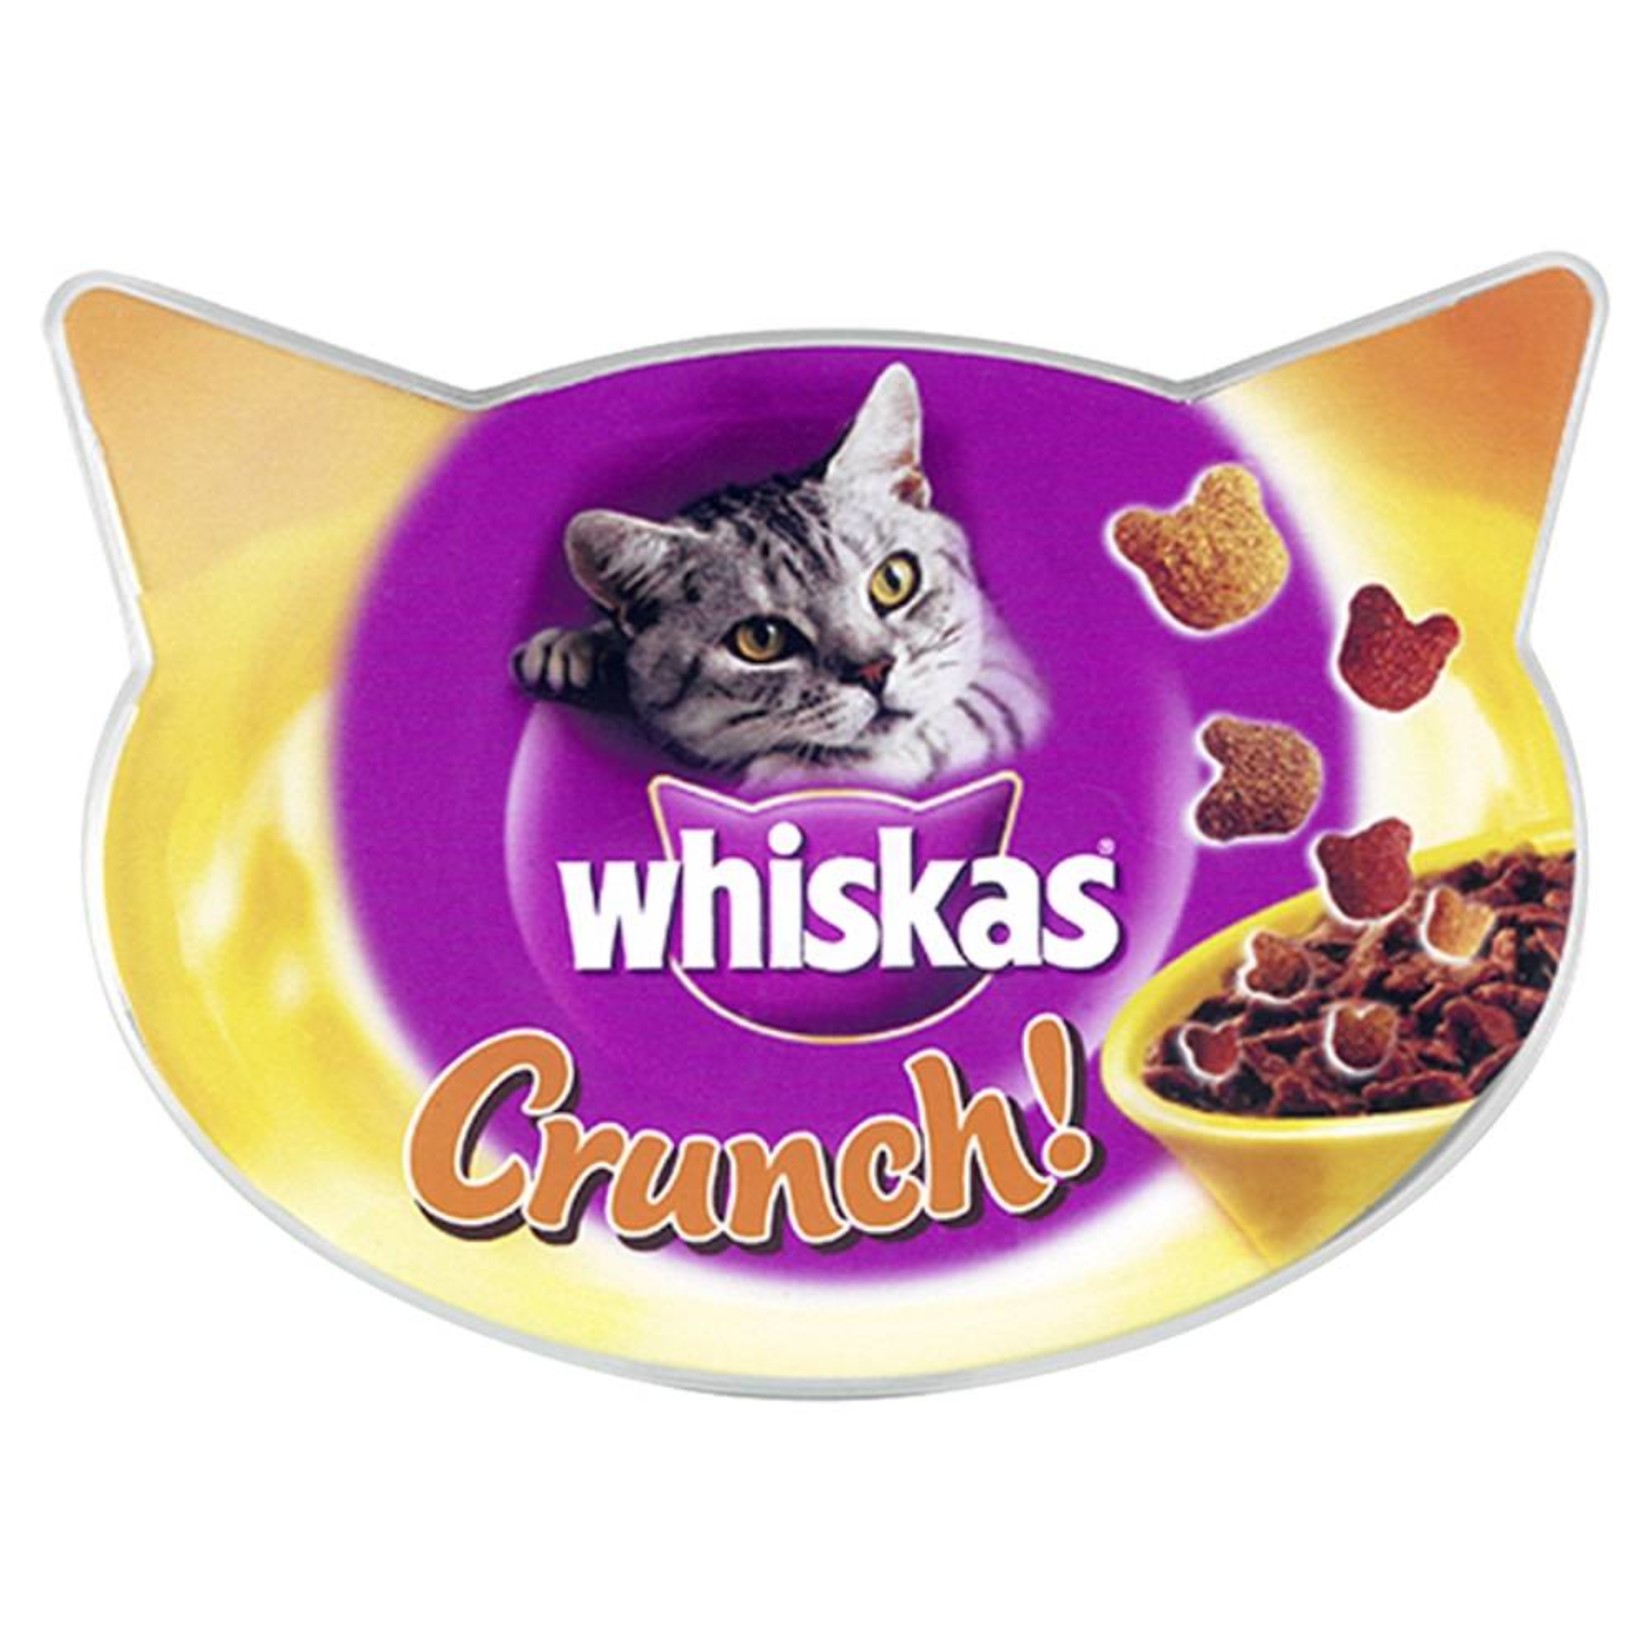 Whiskas Crunch Tasty Topping Cat Treats, 100g